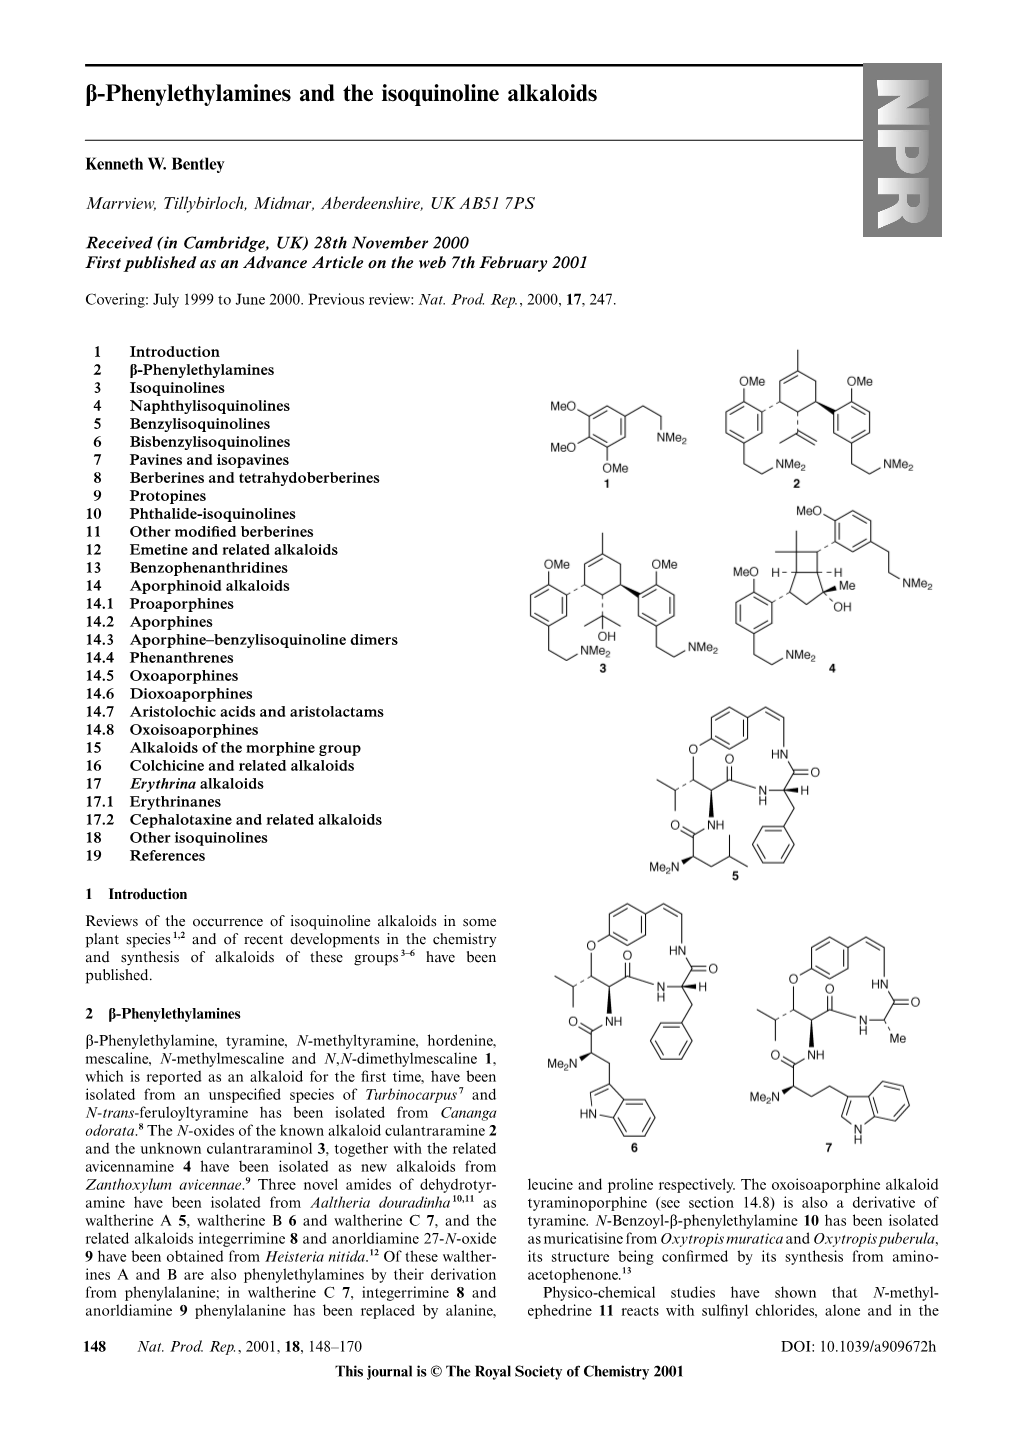 Β-Phenylethylamines and the Isoquinoline Alkaloids